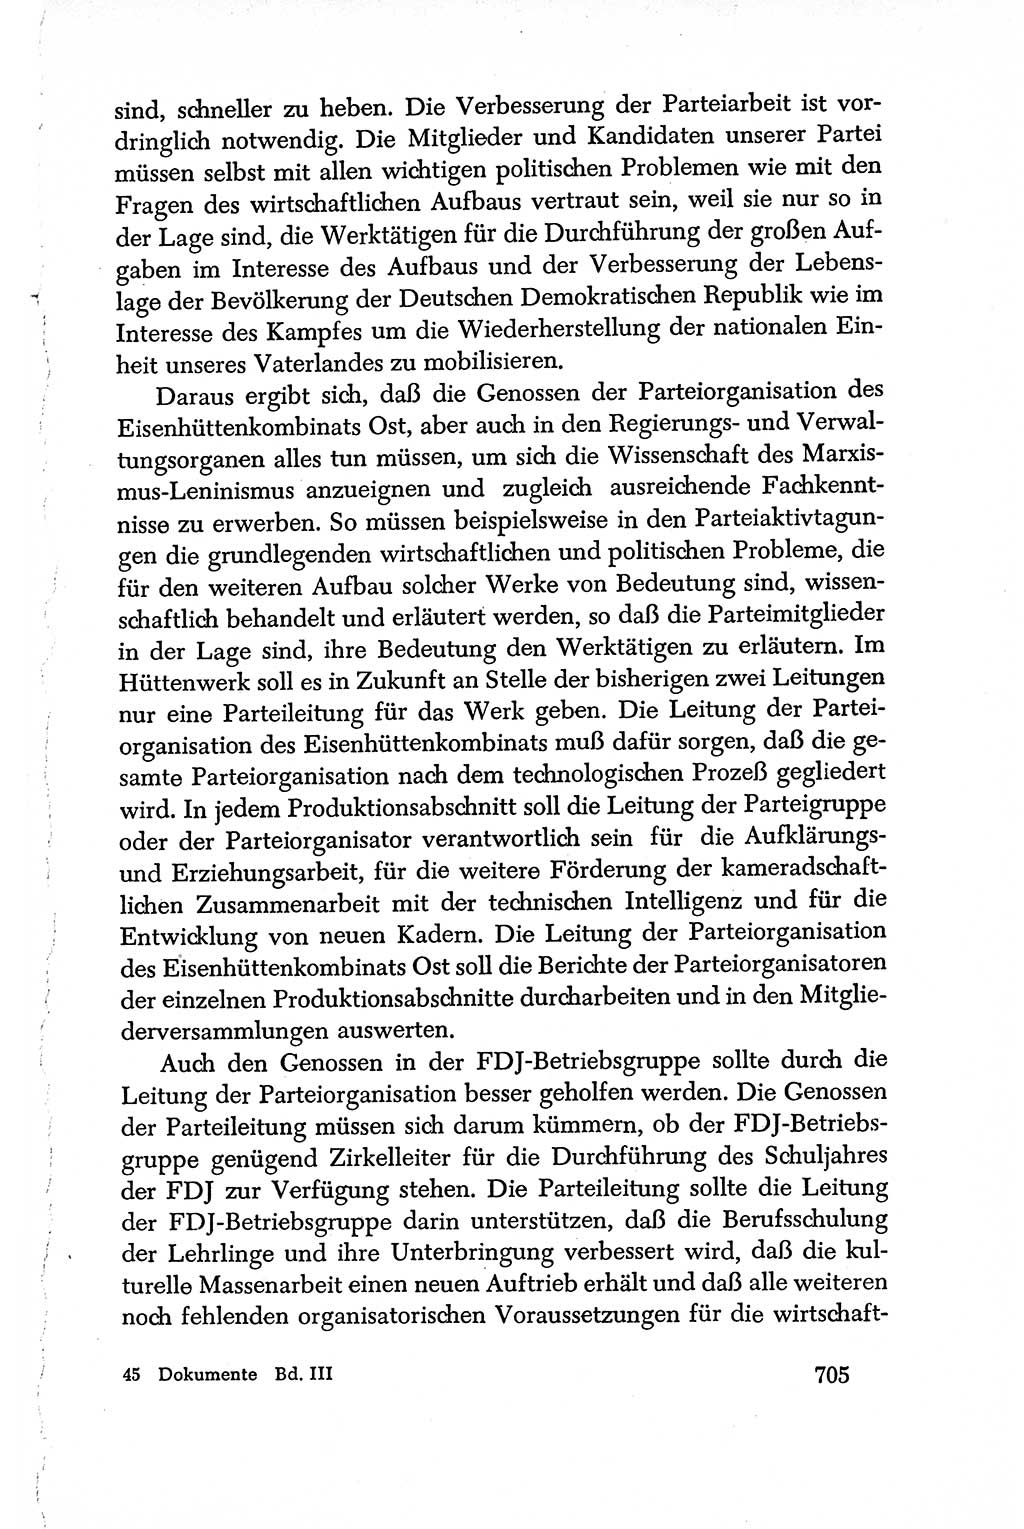 Dokumente der Sozialistischen Einheitspartei Deutschlands (SED) [Deutsche Demokratische Republik (DDR)] 1950-1952, Seite 705 (Dok. SED DDR 1950-1952, S. 705)